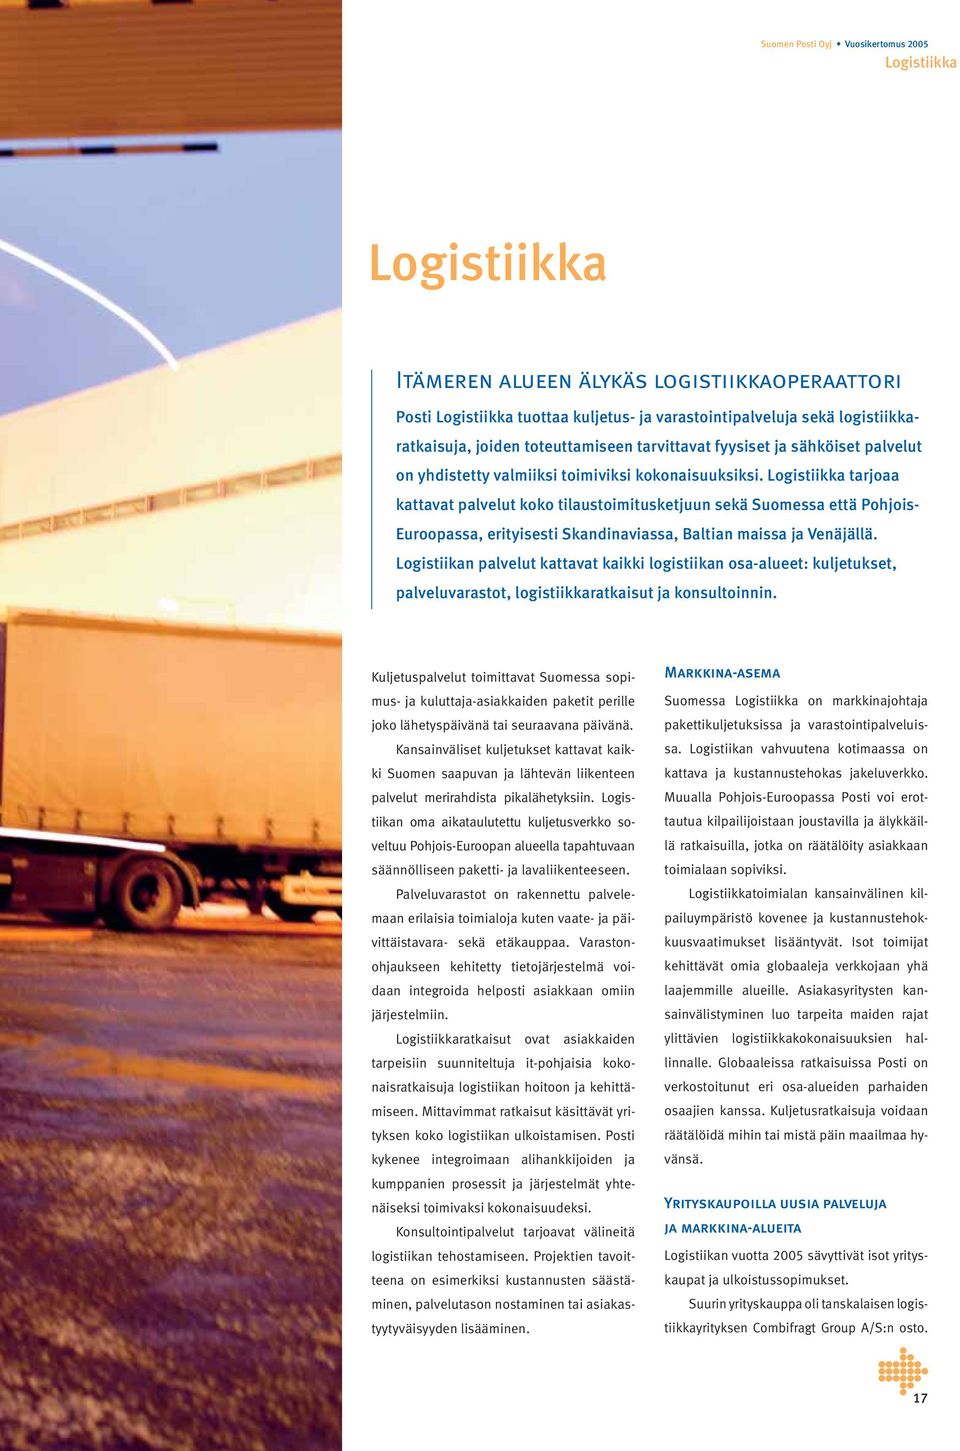 Logistiikka tarjoaa kattavat palvelut koko tilaustoimitusketjuun sekä Suomessa että Pohjois- Euroopassa, erityisesti Skandinaviassa, Baltian maissa ja Venäjällä.